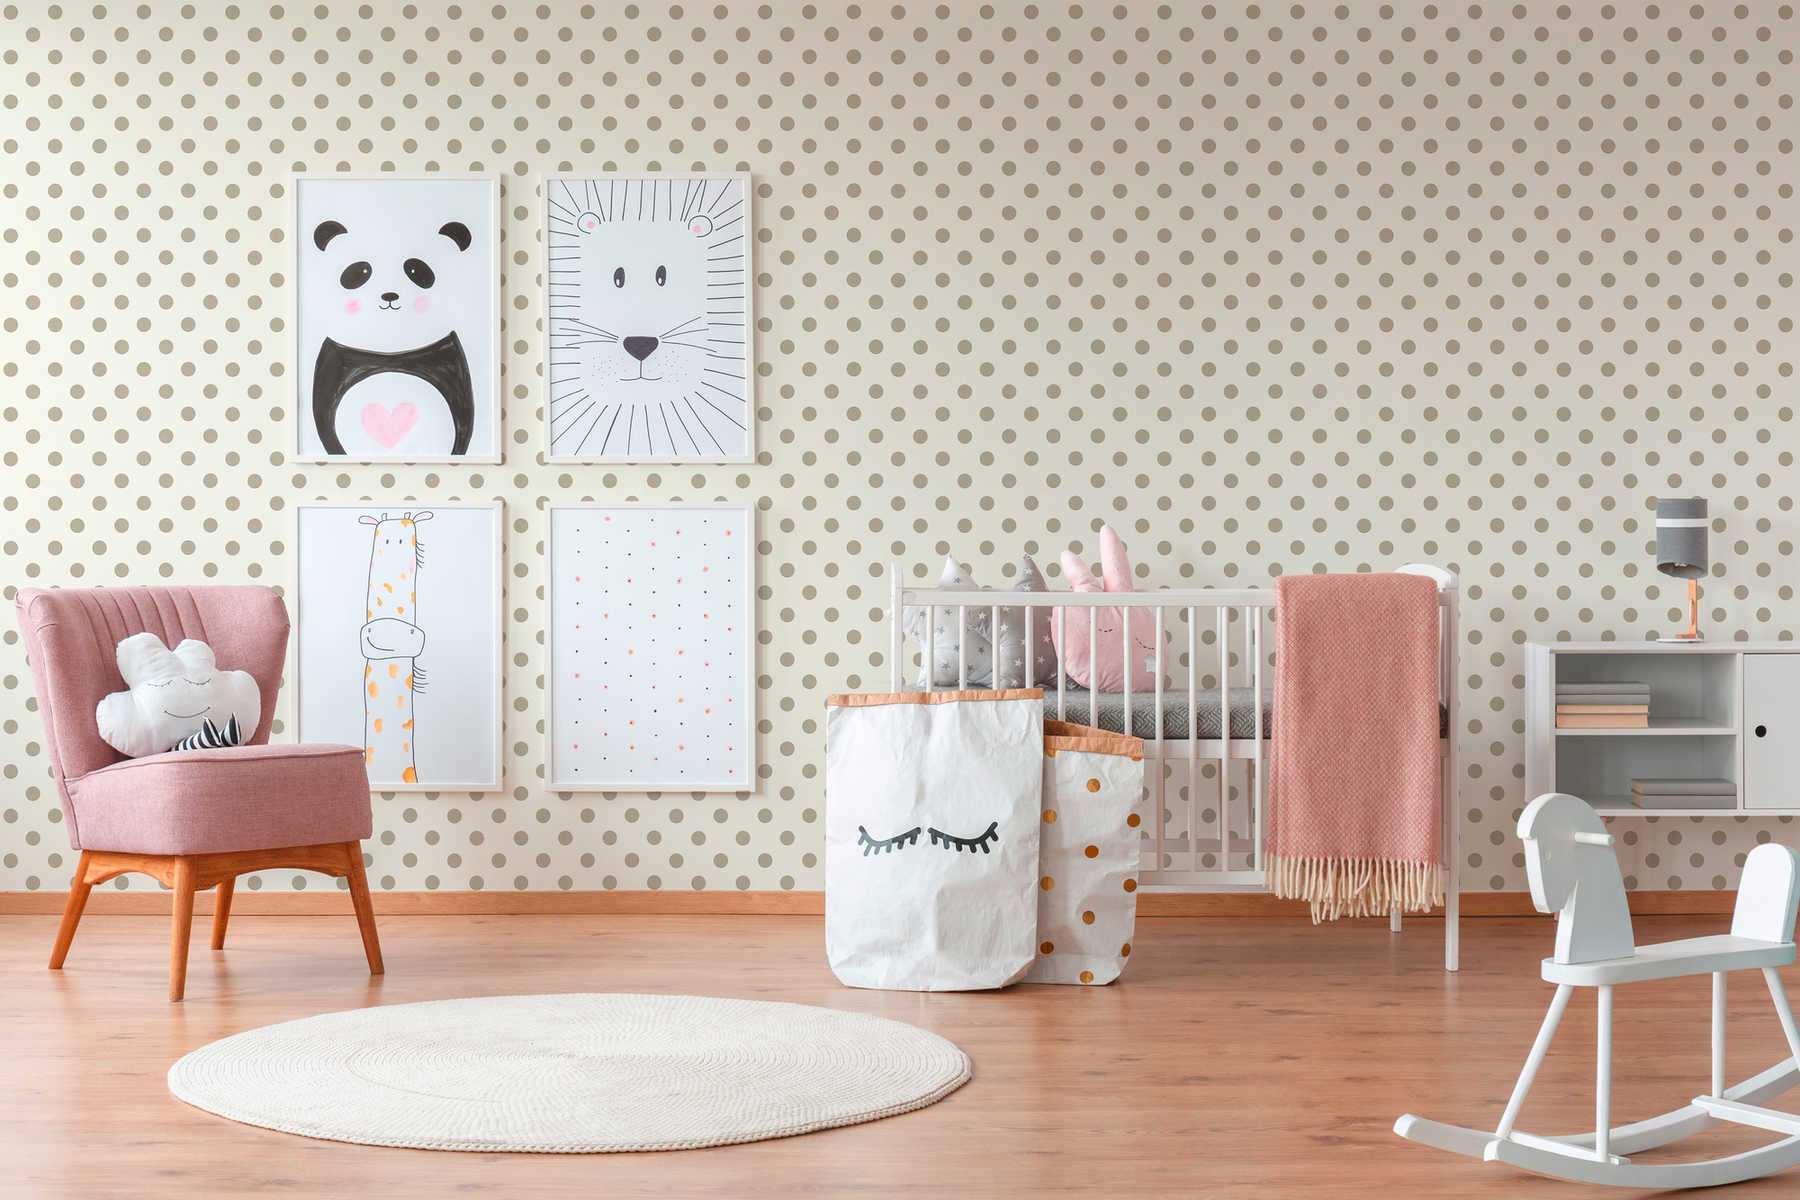             Carta da parati in tessuto non tessuto a pois, design a pois per la camera dei bambini - beige, rosa
        